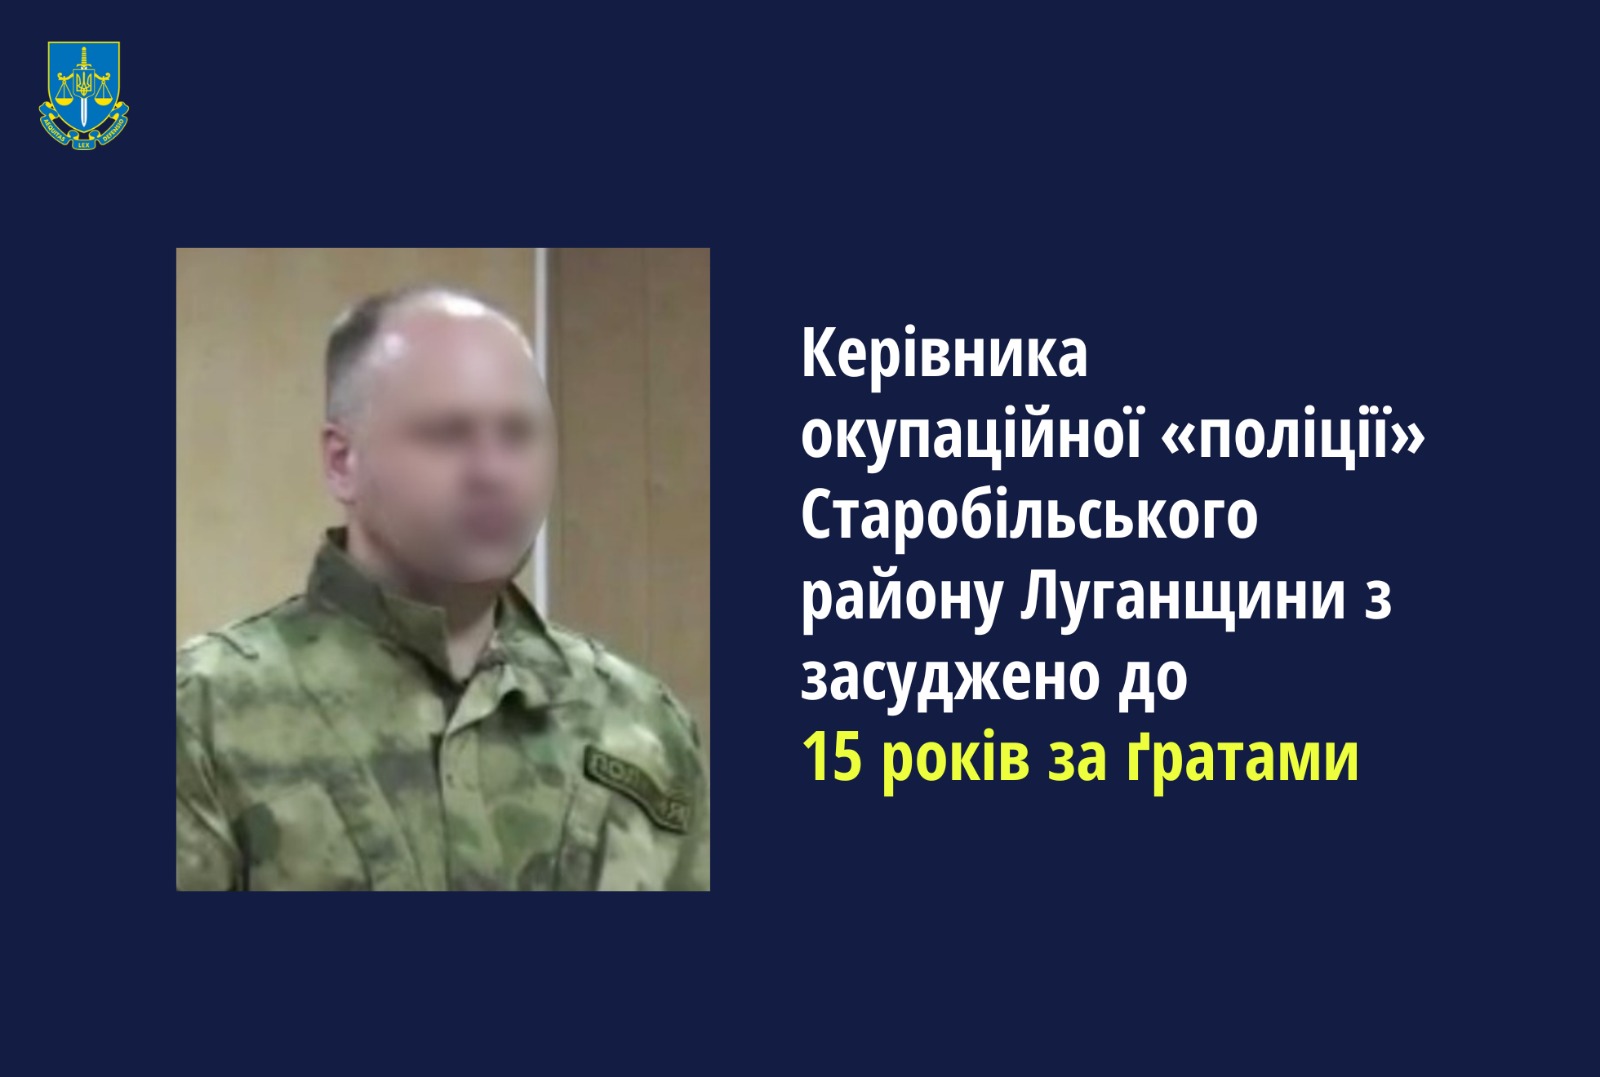 Керівника окупаційної «поліції» Старобільського району Луганщини засуджено до максимального покарання ‒ 15 років за ґратами